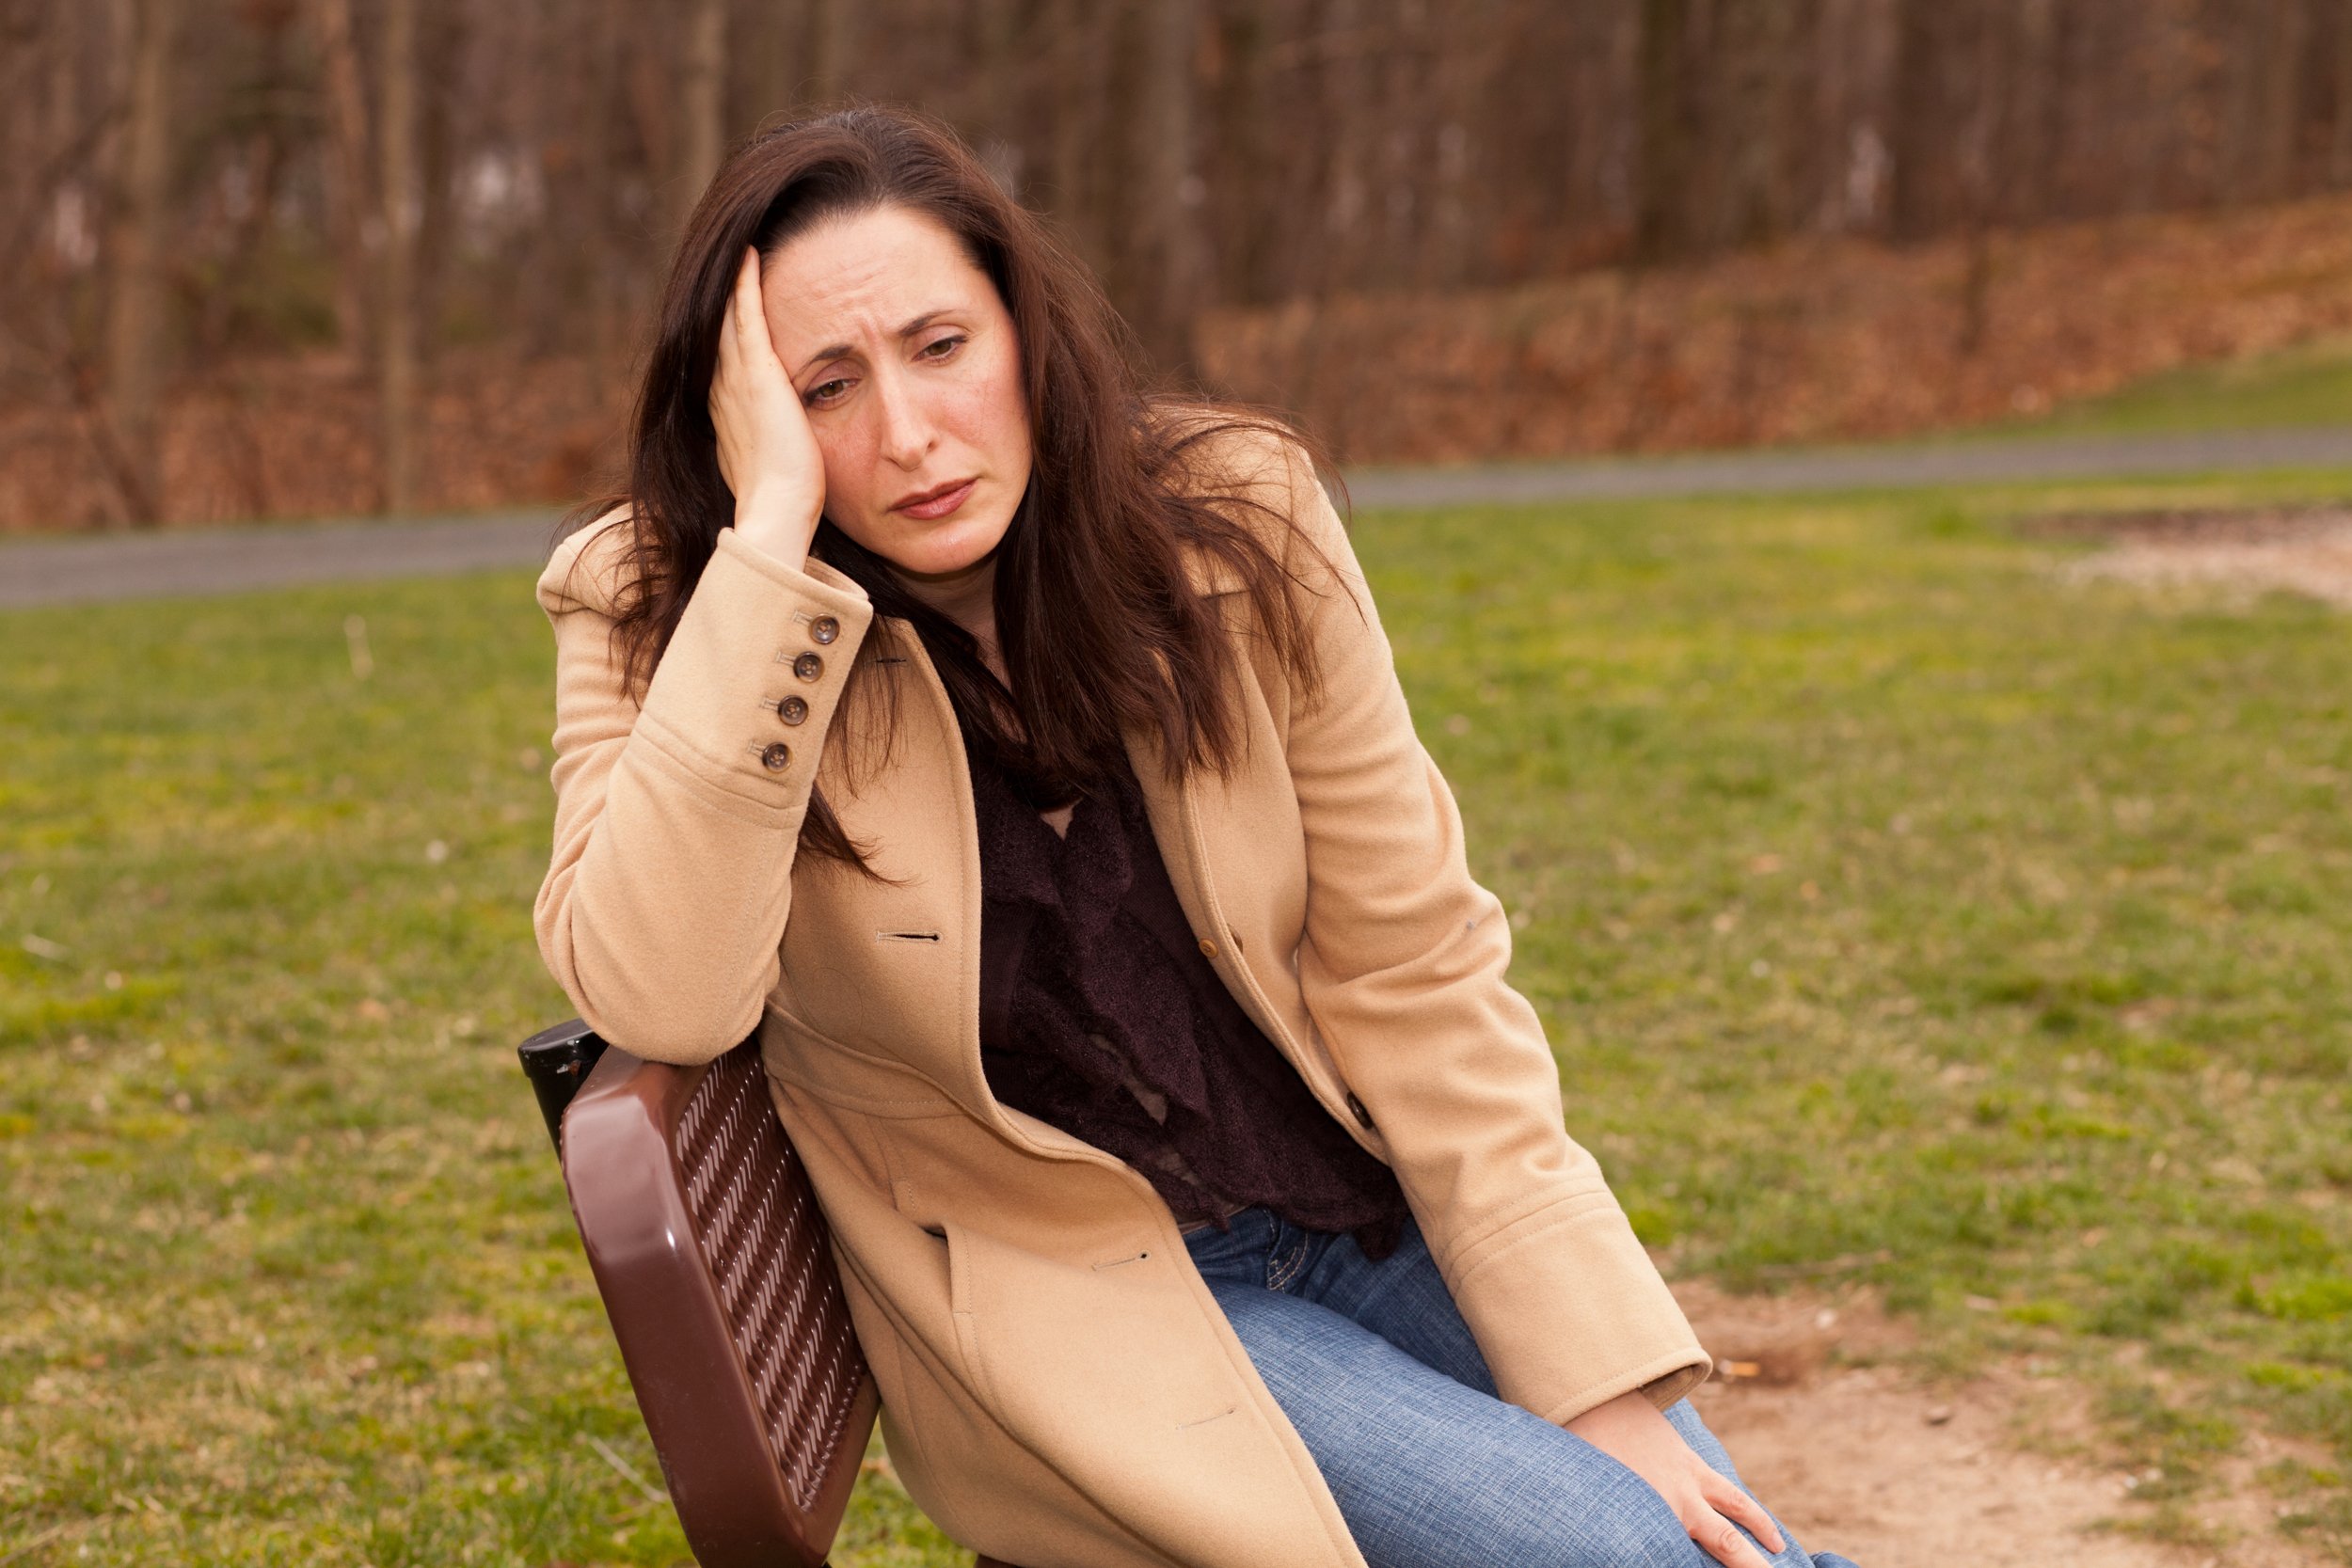 Traurige Frau, die an einem wolkigen Tag auf einer Bank sitzt und einsam aussieht | Quelle: Shutterstock